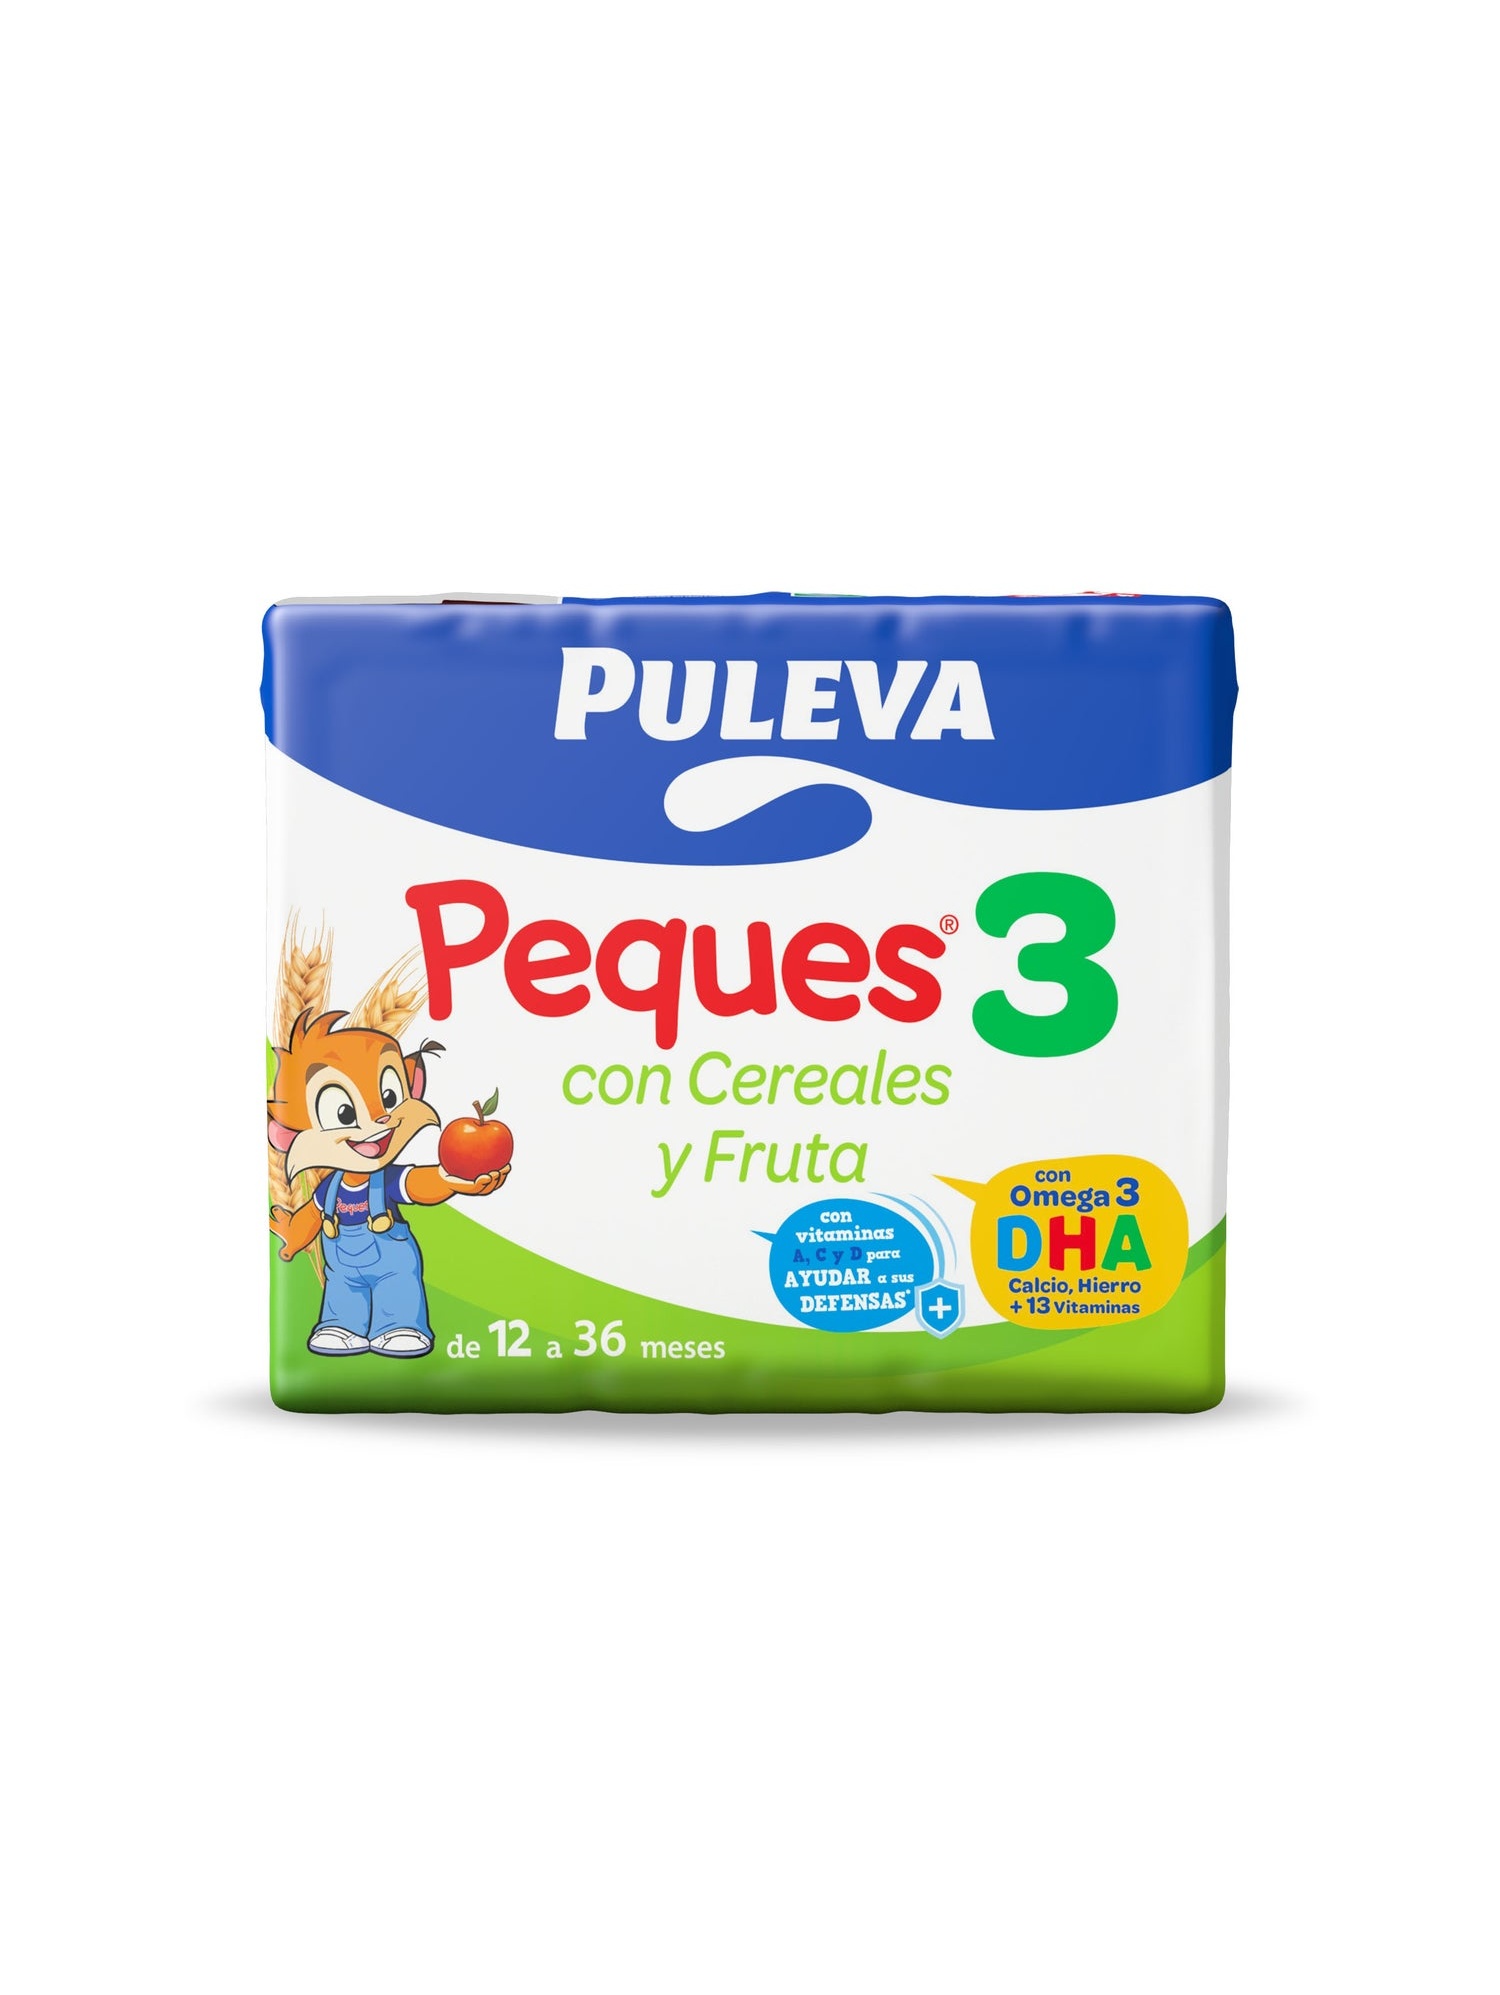 Puleva Peques 3 Cereales Y Fruta 3X200Ml. - Farmacia Ciudad Lineal Dolores  Ropa